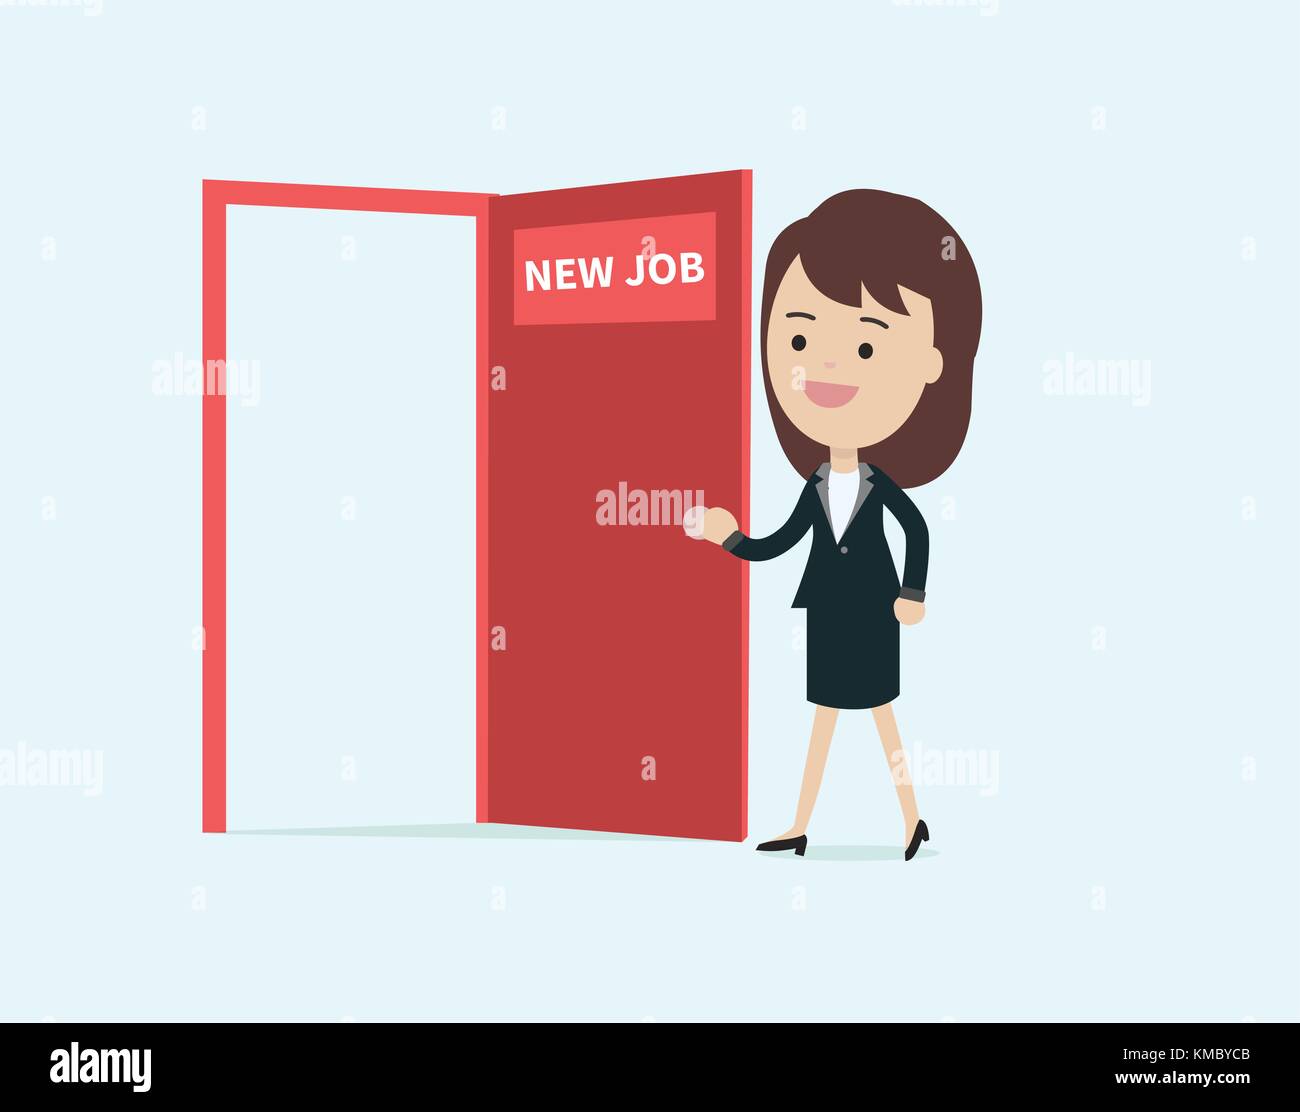 Geschäftsfrau zu Fuß und offene rote Tür mit neuer Job text Vector Illustration. Business girl Cartoon Character Design glücklich zu neuen Job Stock Vektor